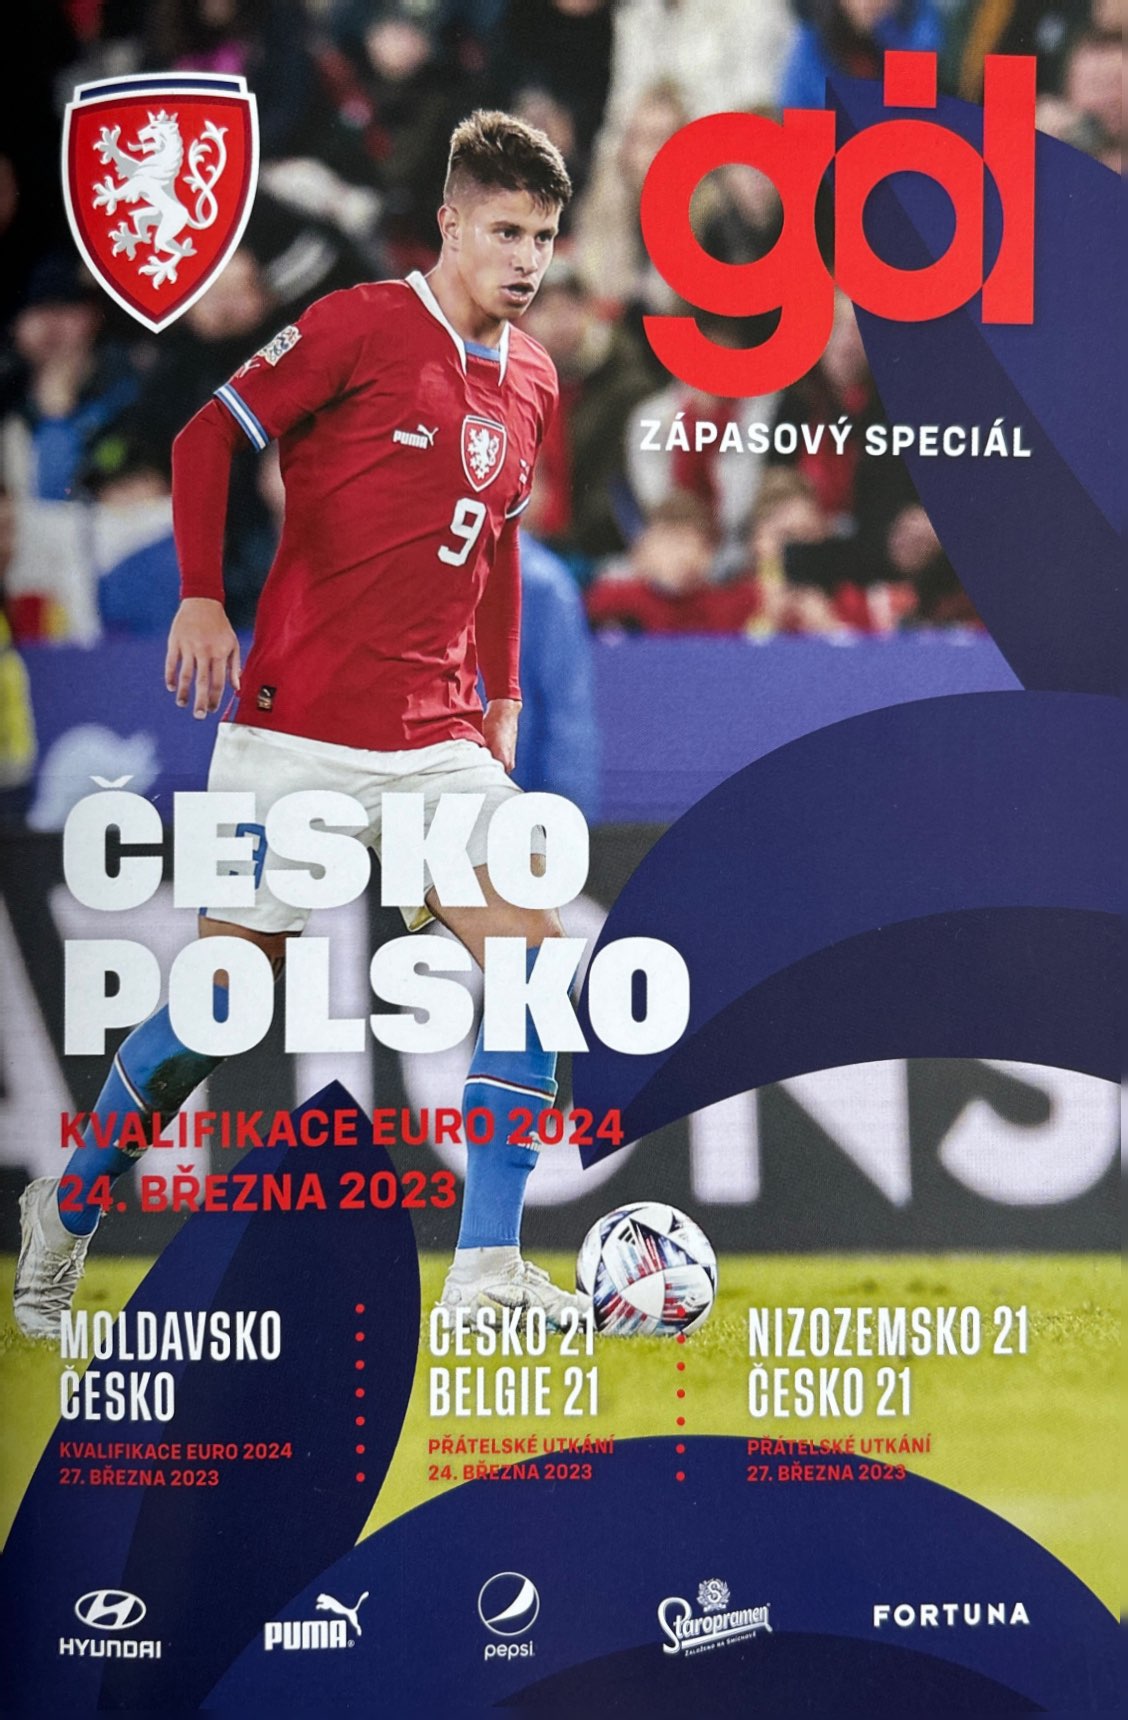 Program meczowy Czechy - Polska 3:1 (24.03.2023)